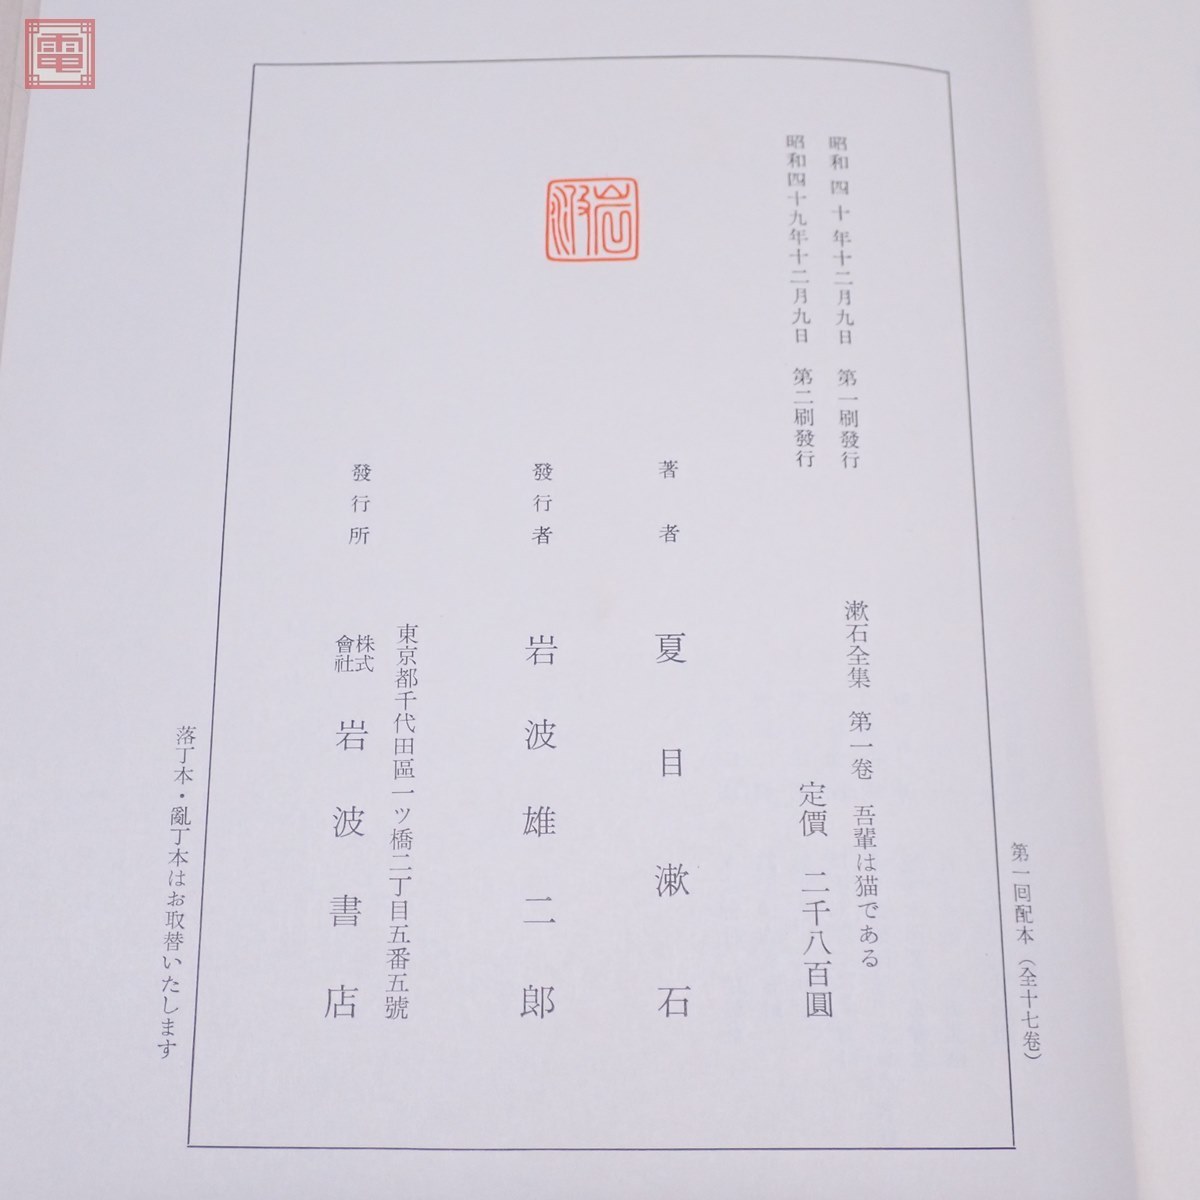 漱石全集 全17巻＋月報巻 全18冊揃 岩波書店 1974年/昭和49年発行 函入 